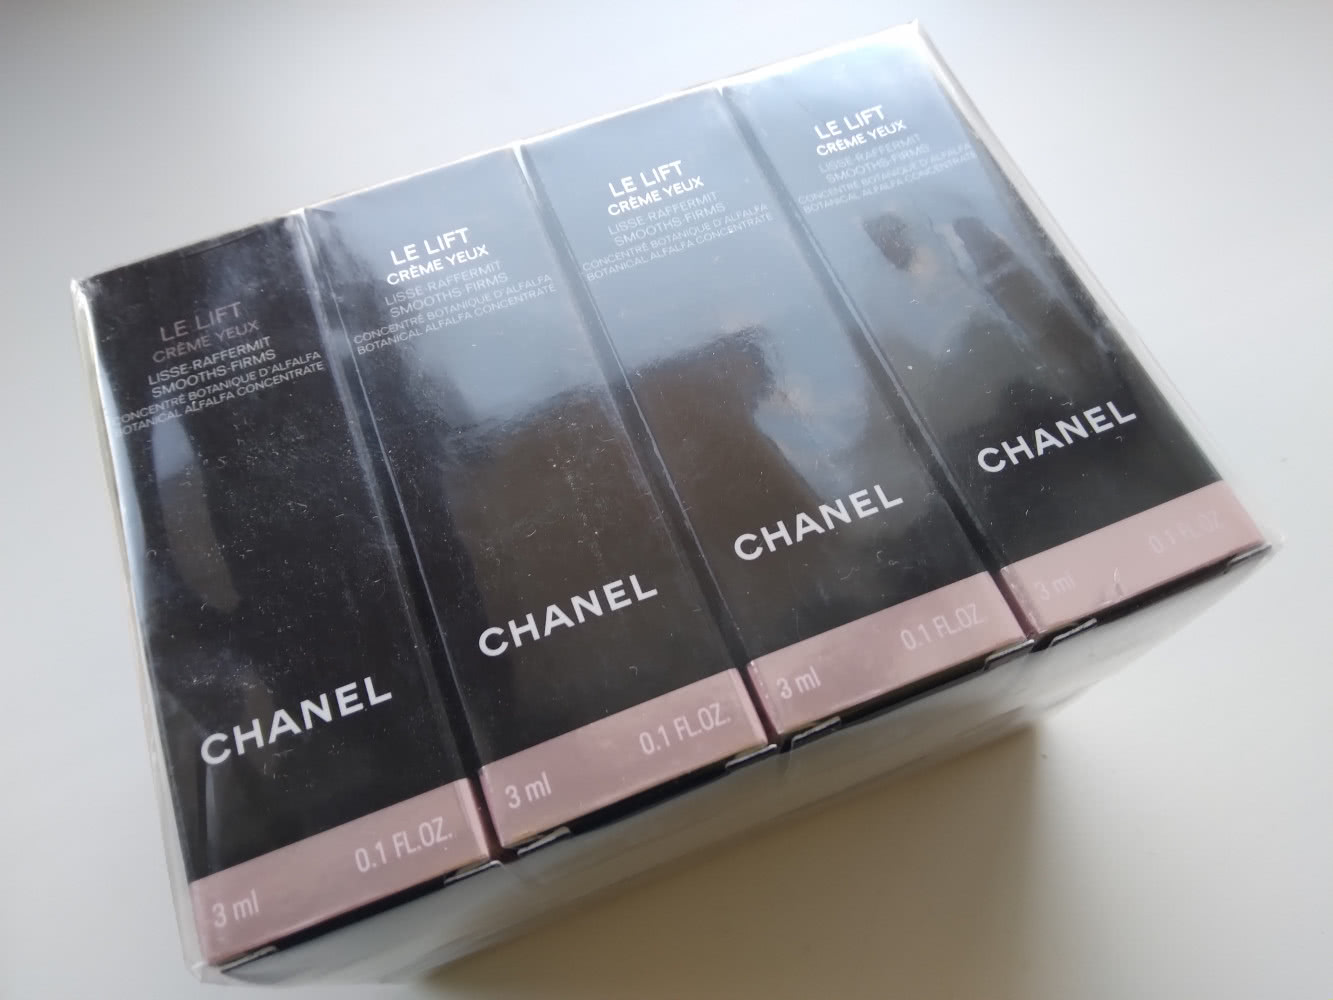 Chanel Le lift  creme yeux  12 x 3 ml